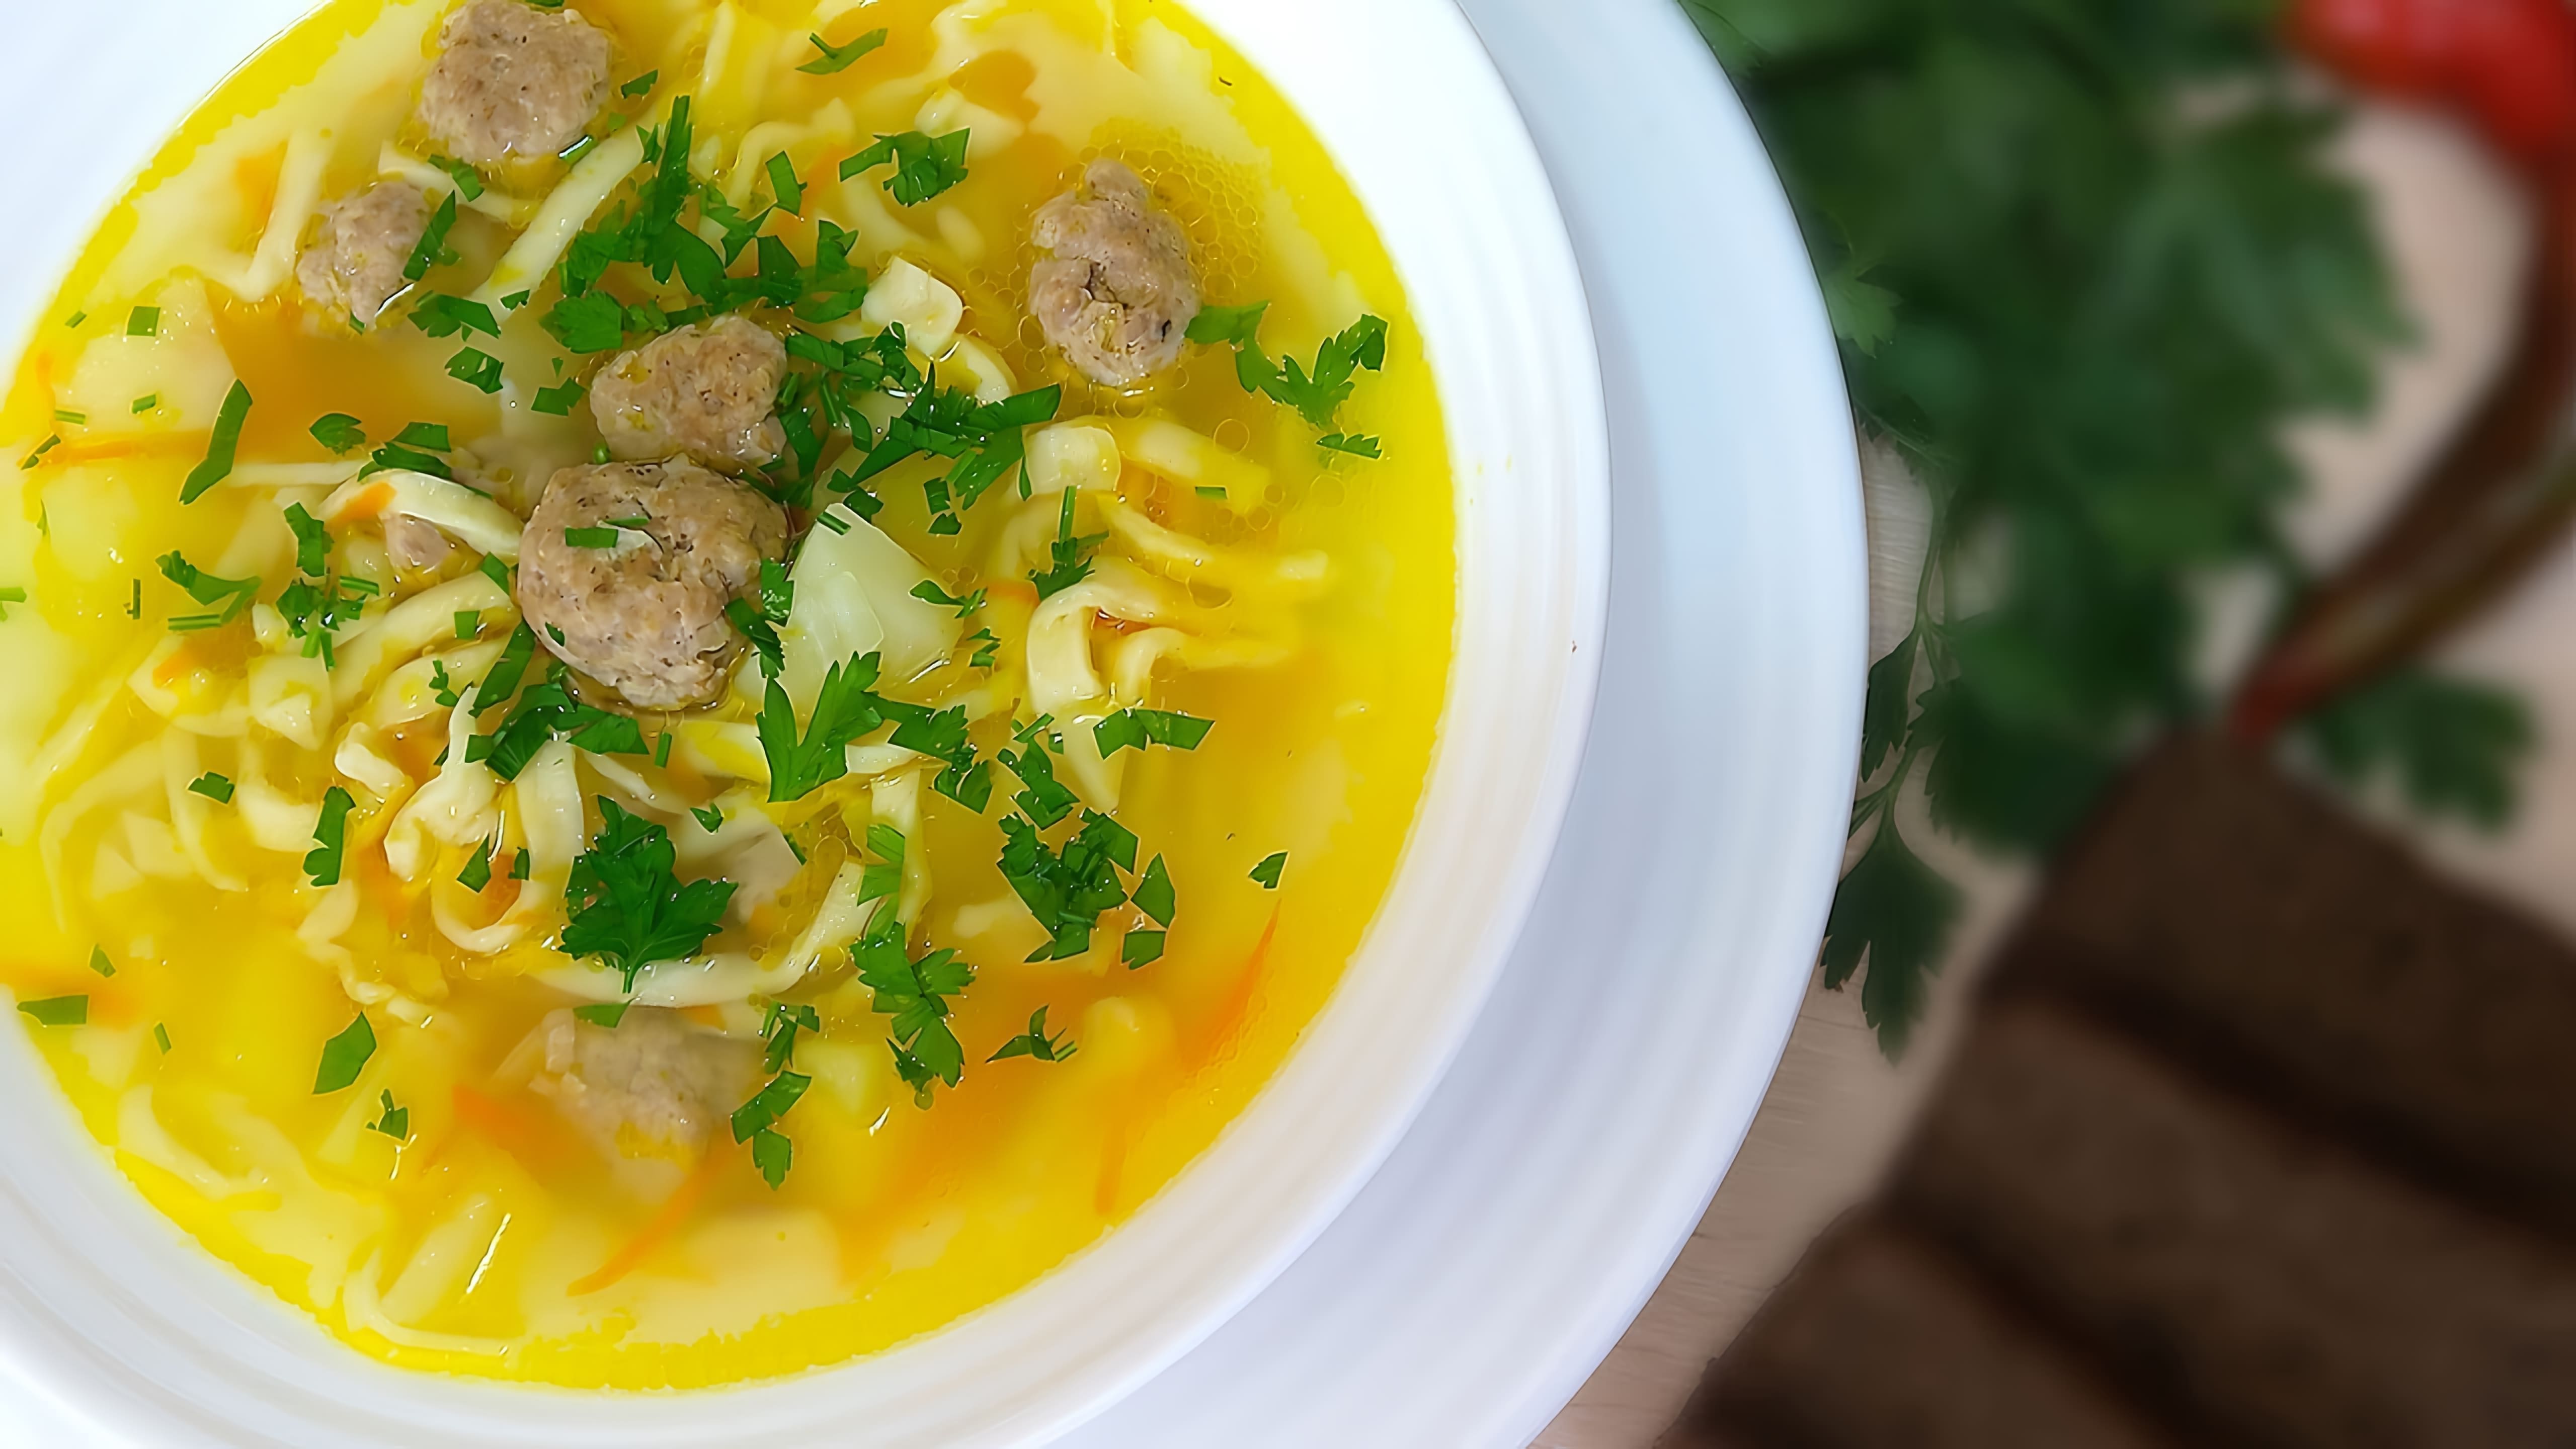 В этом видео демонстрируется процесс приготовления супа с фрикадельками